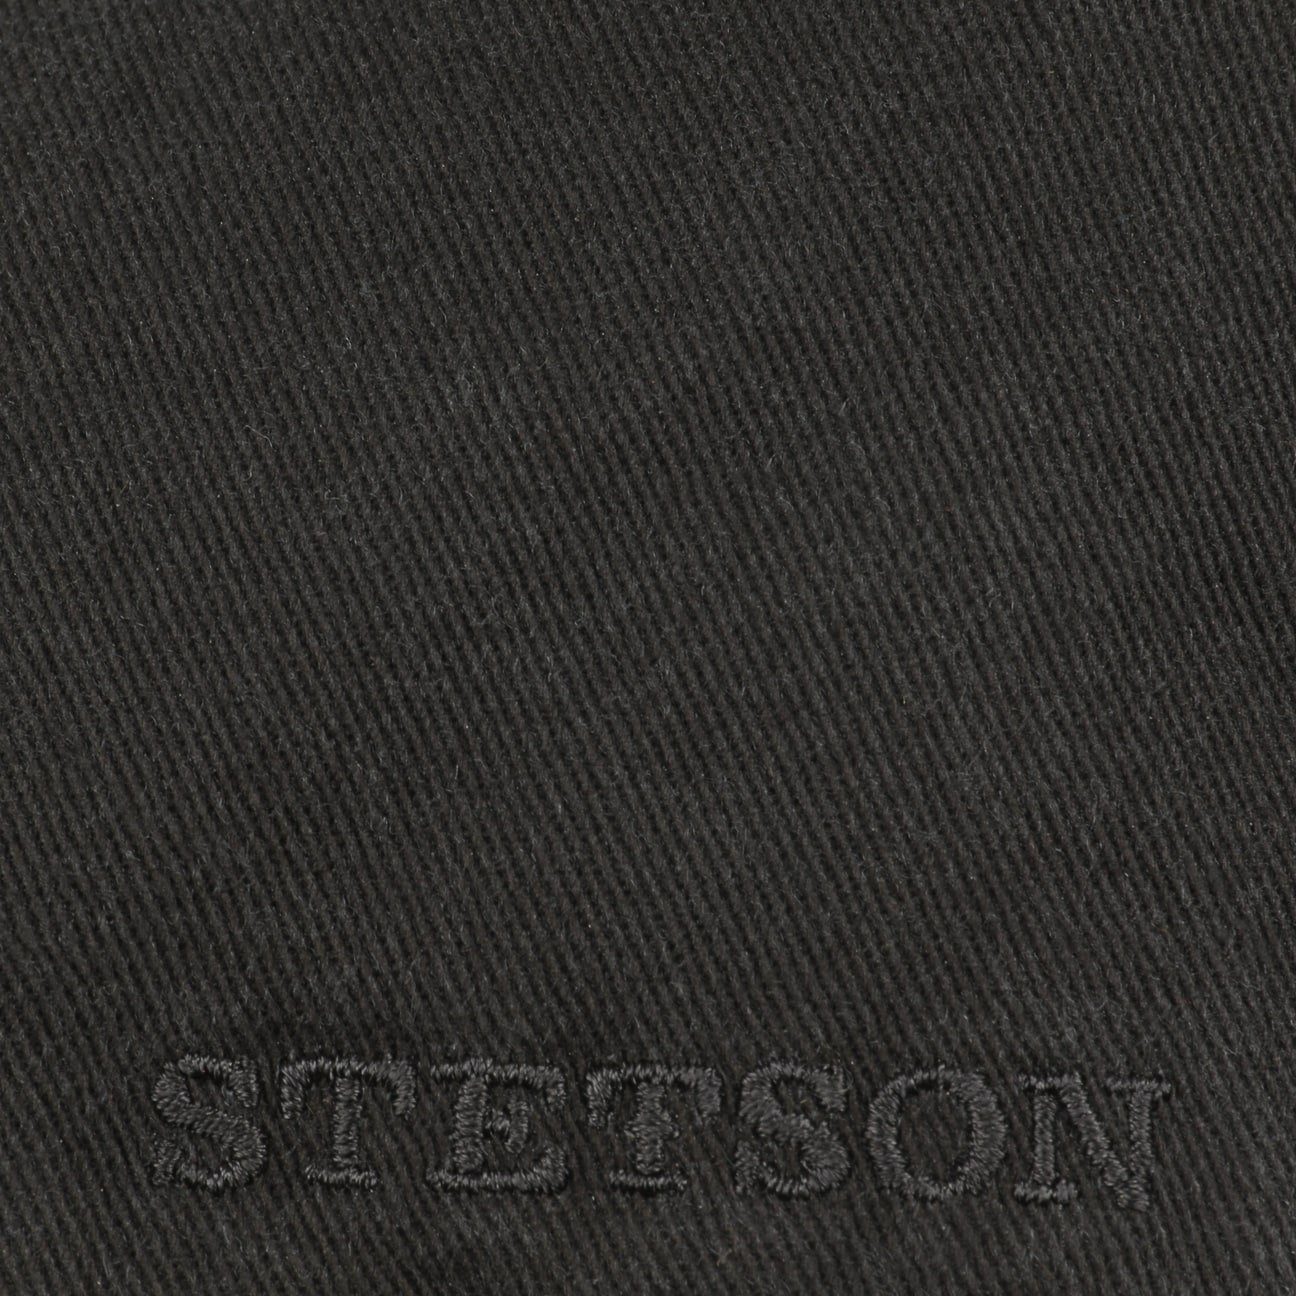 Stetson Flat Cap (1-St) mit schwarz Schirmmütze Schirm